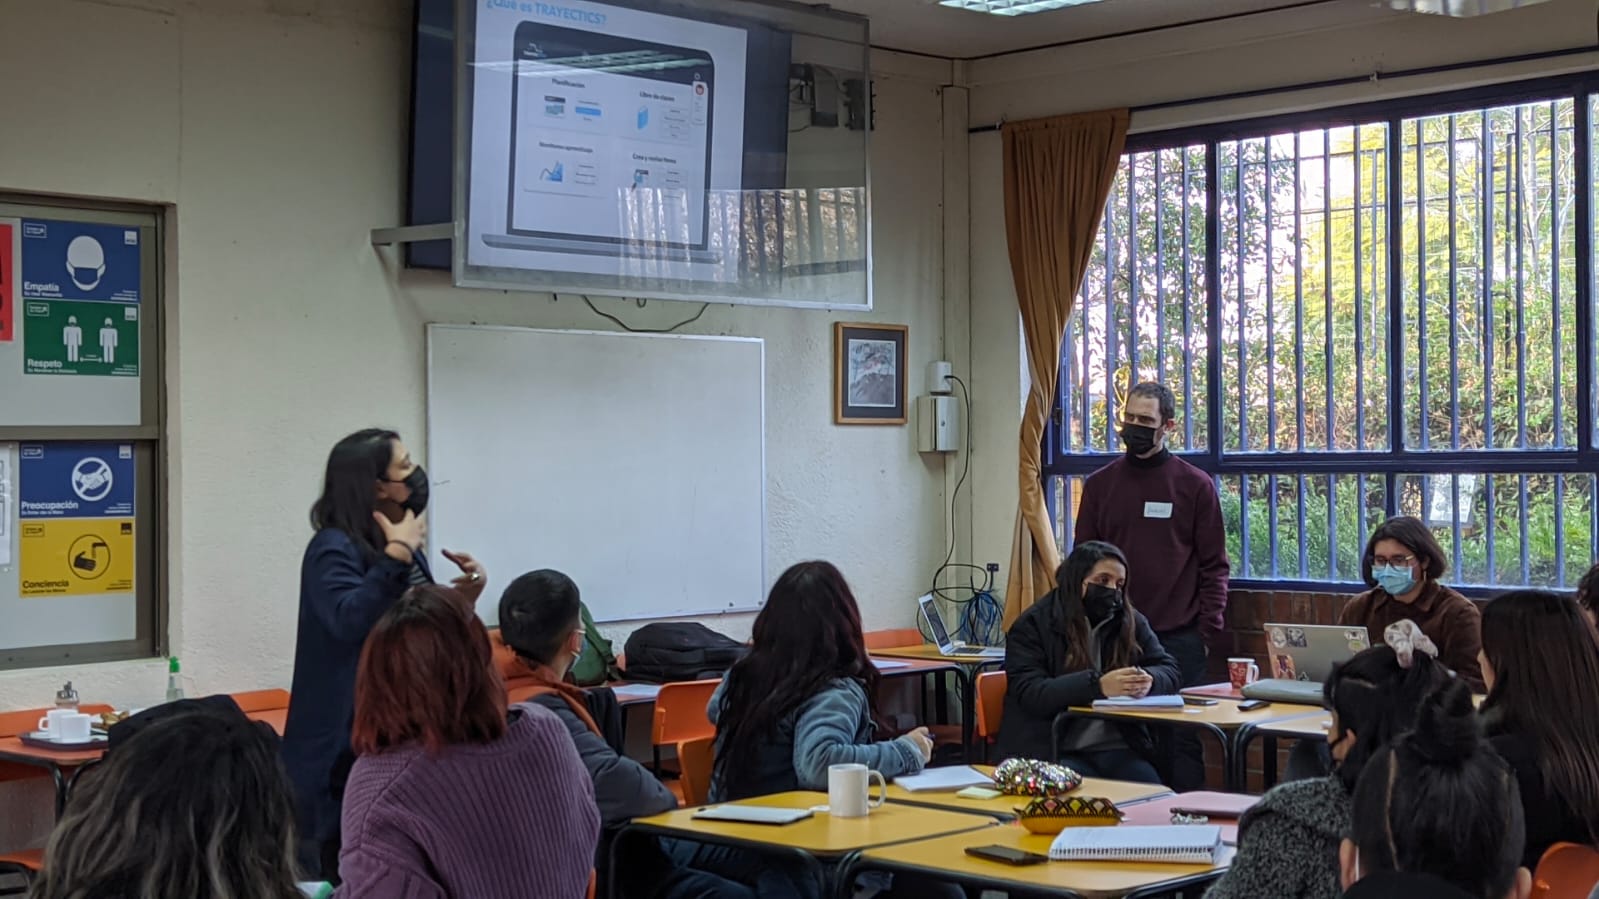 App educativa permitirá monitorear aprendizaje de estudiantes en establecimientos educacionales chilenos